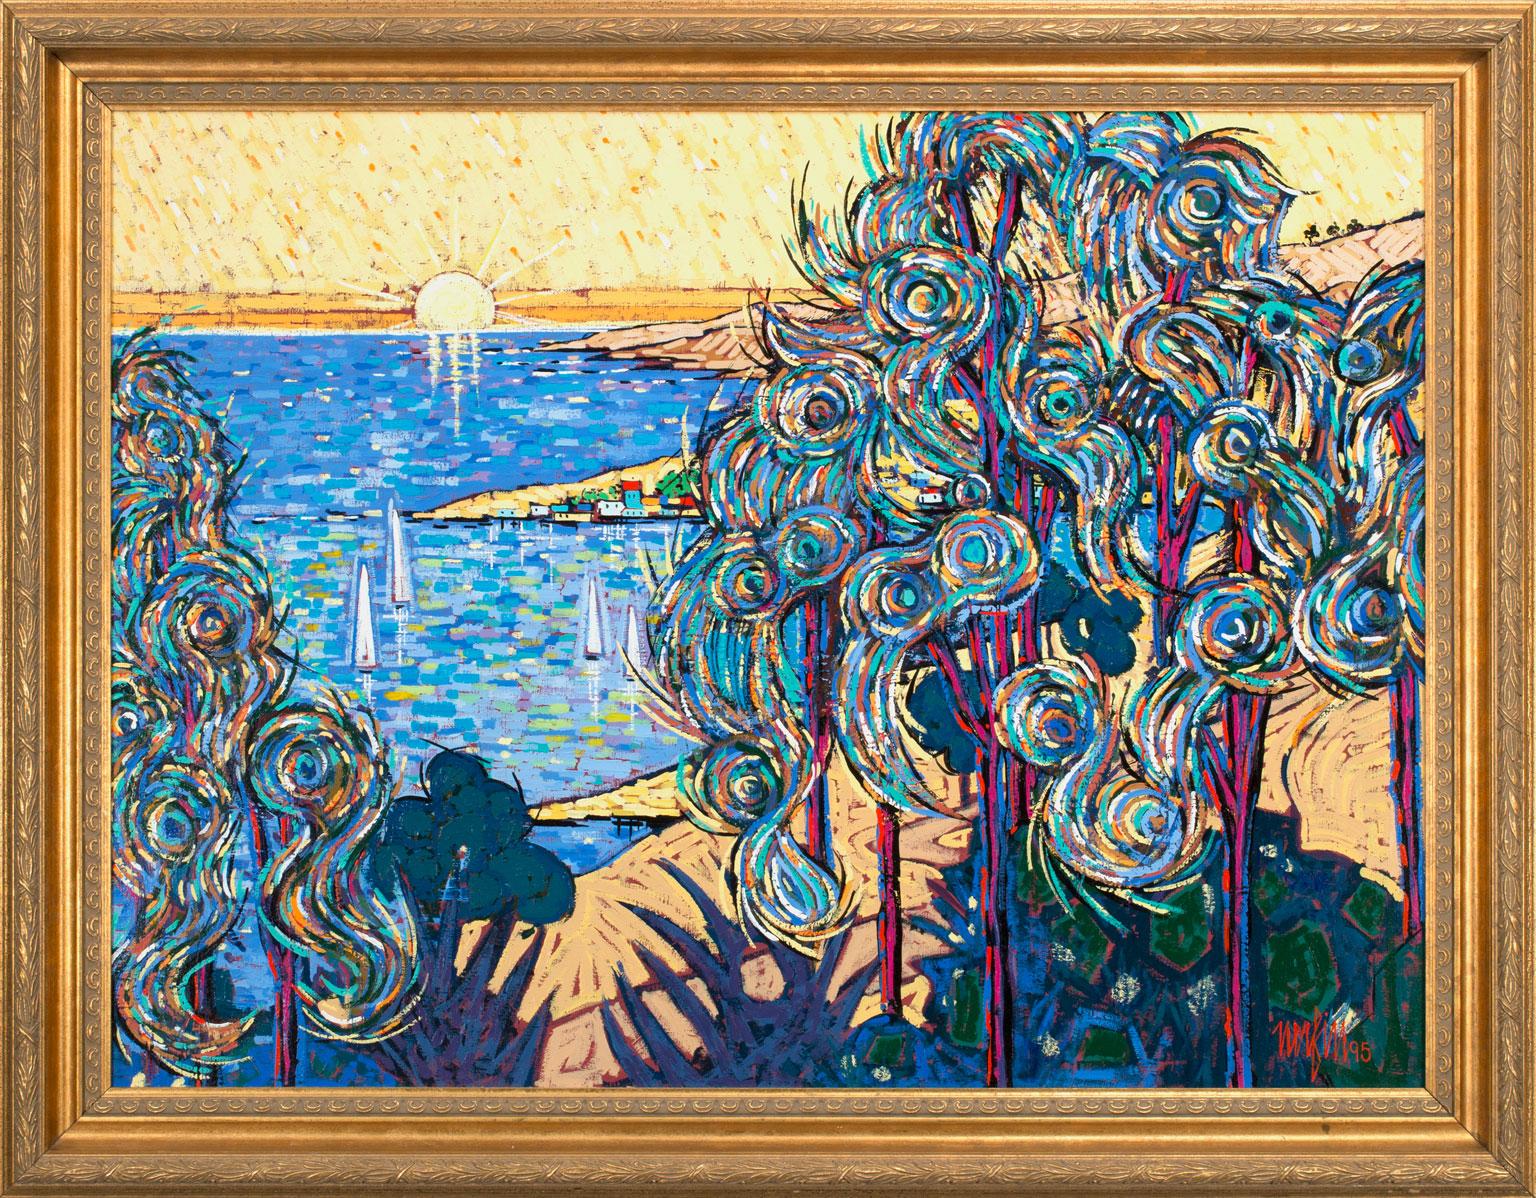 Untitled Abstract Landscape:: une huile sur toile originale de Jean Nerfin:: est une pièce pour le véritable collectionneur. L'utilisation de la couleur par Nerfin et un style post-impressionniste-fauvisme-pointillisme combiné témoignent d'un style